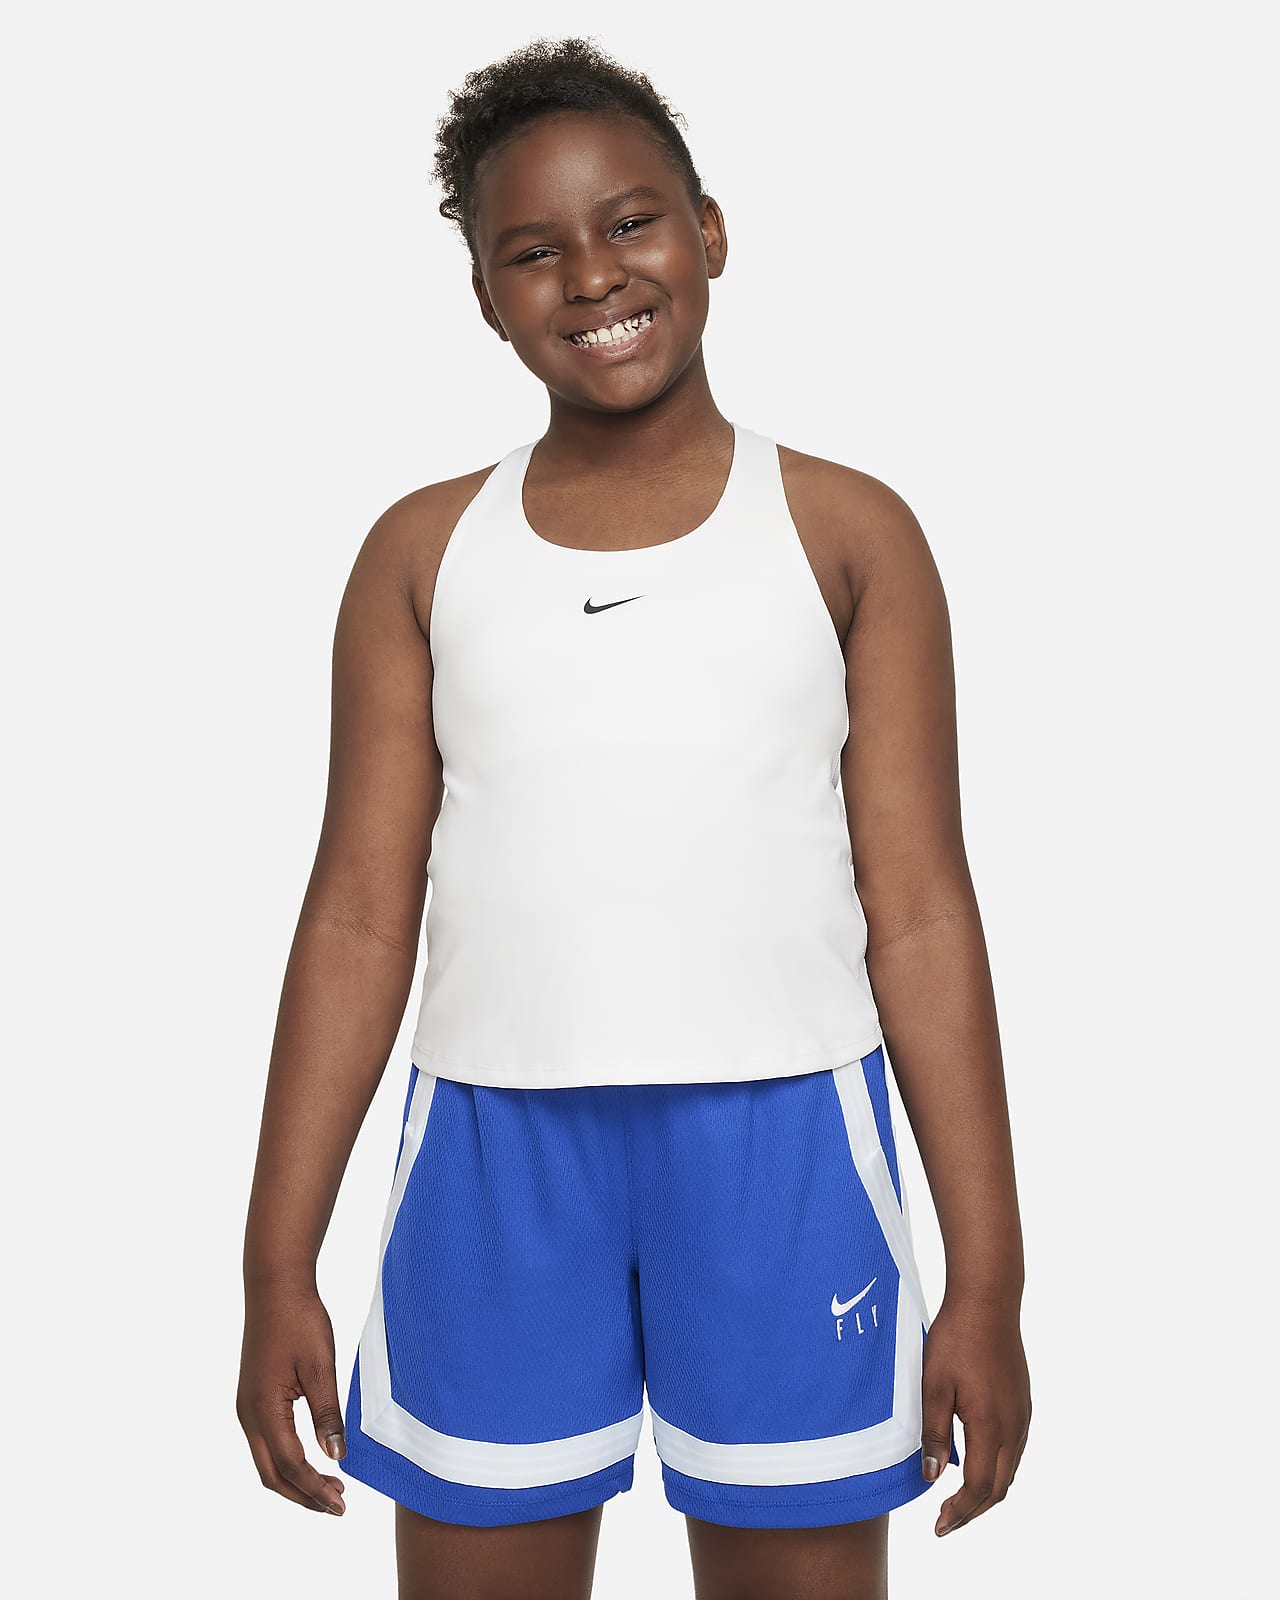 Nike.com Size Fit Guide - Women's Bras